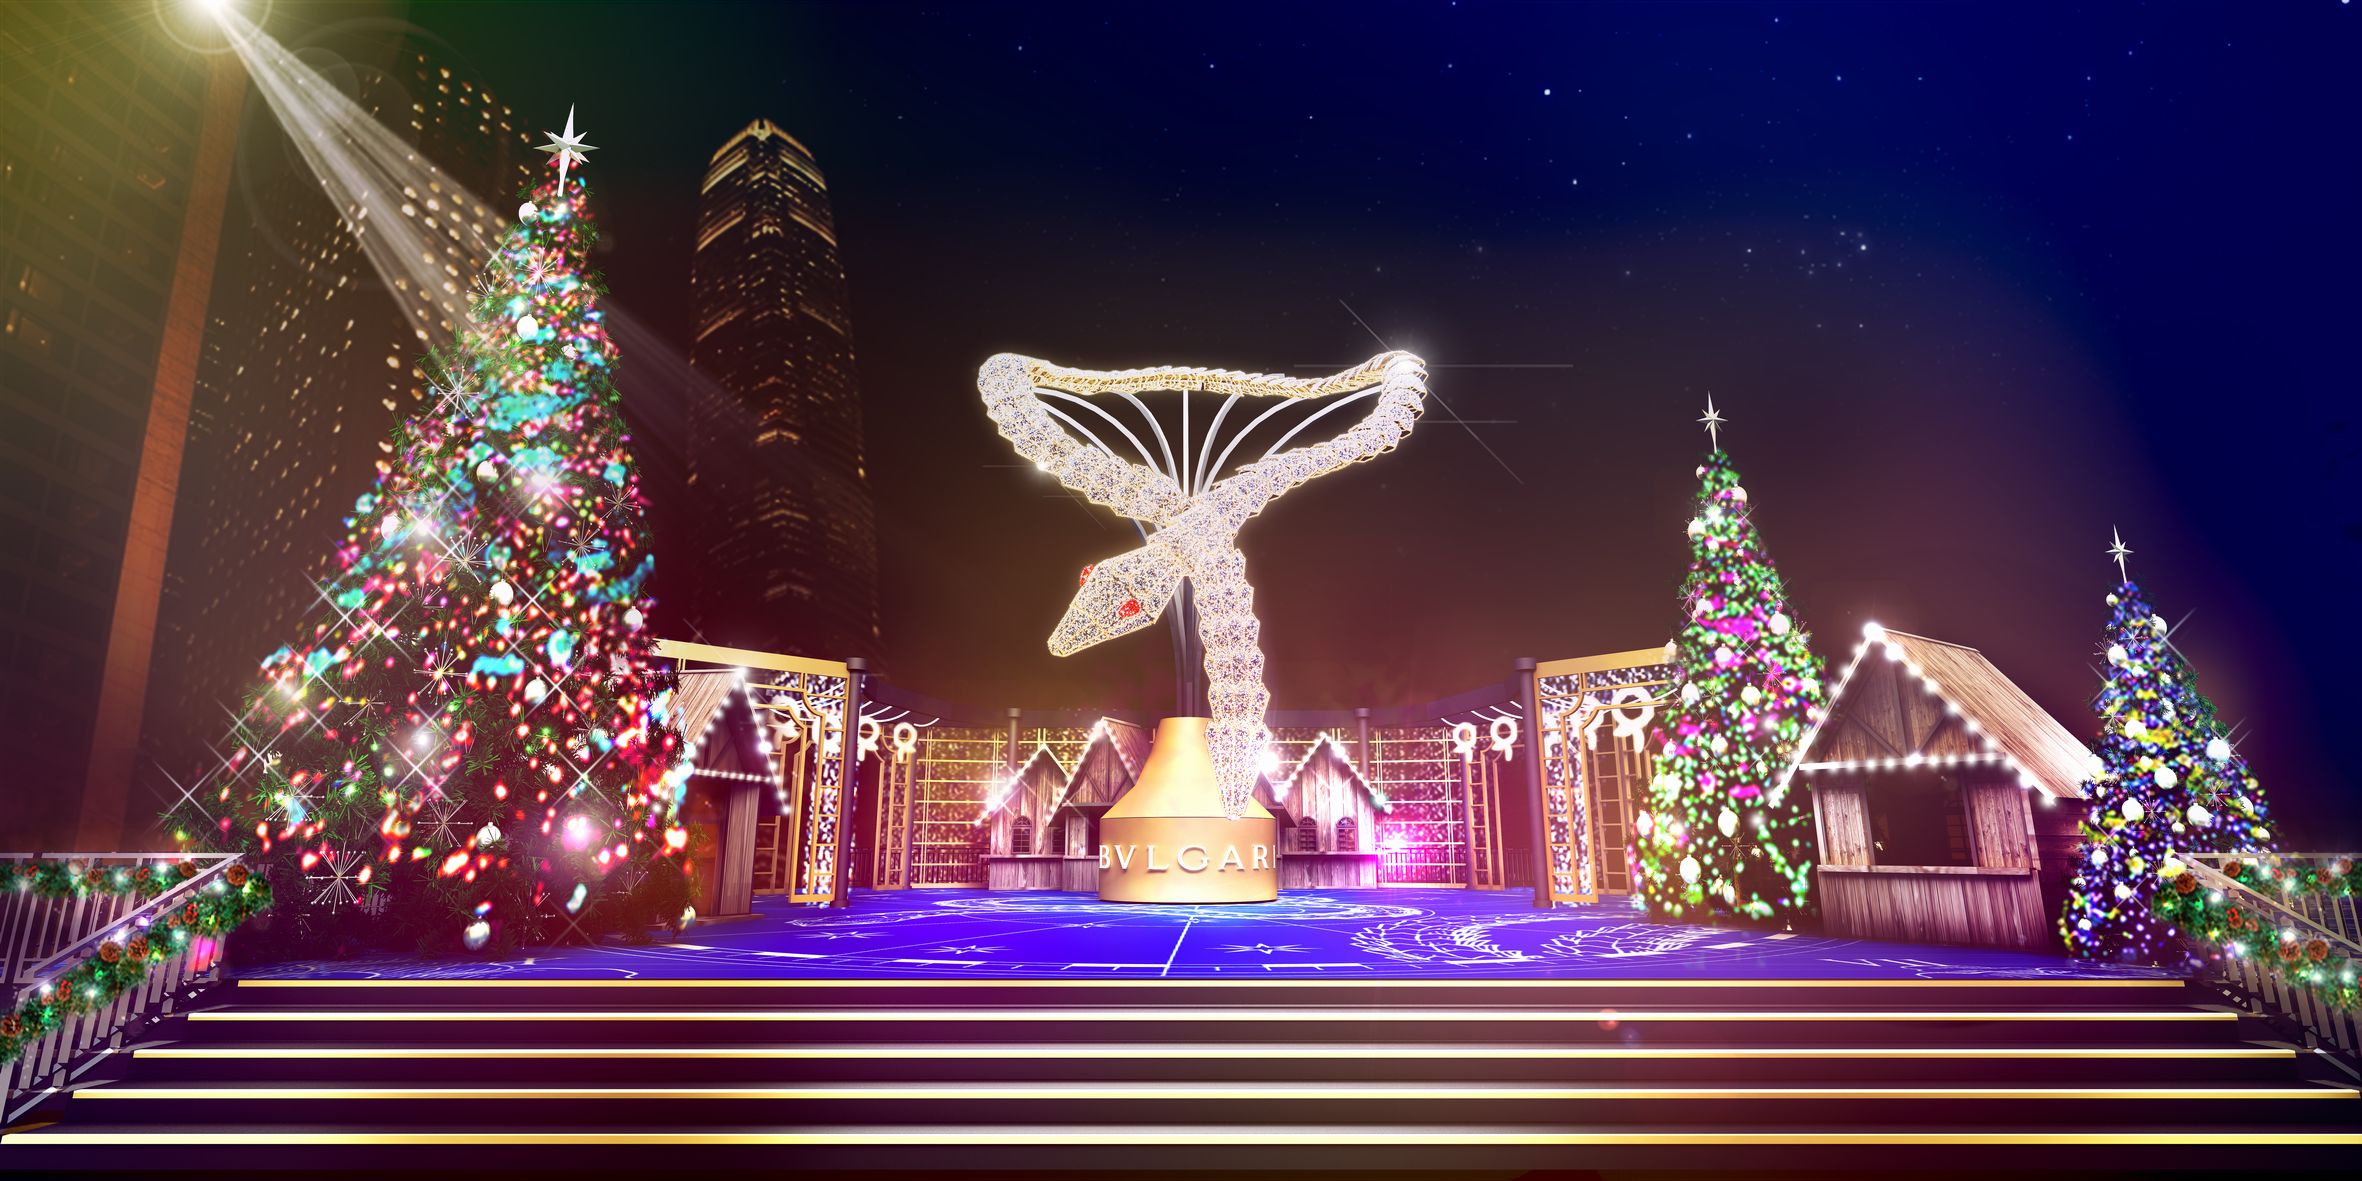 「香港ウィンター・フェスタ2015」 12月4日より開始 ―夜空に煌くブルガリのクリスマスイルミネーションが登場 ―| Risvel